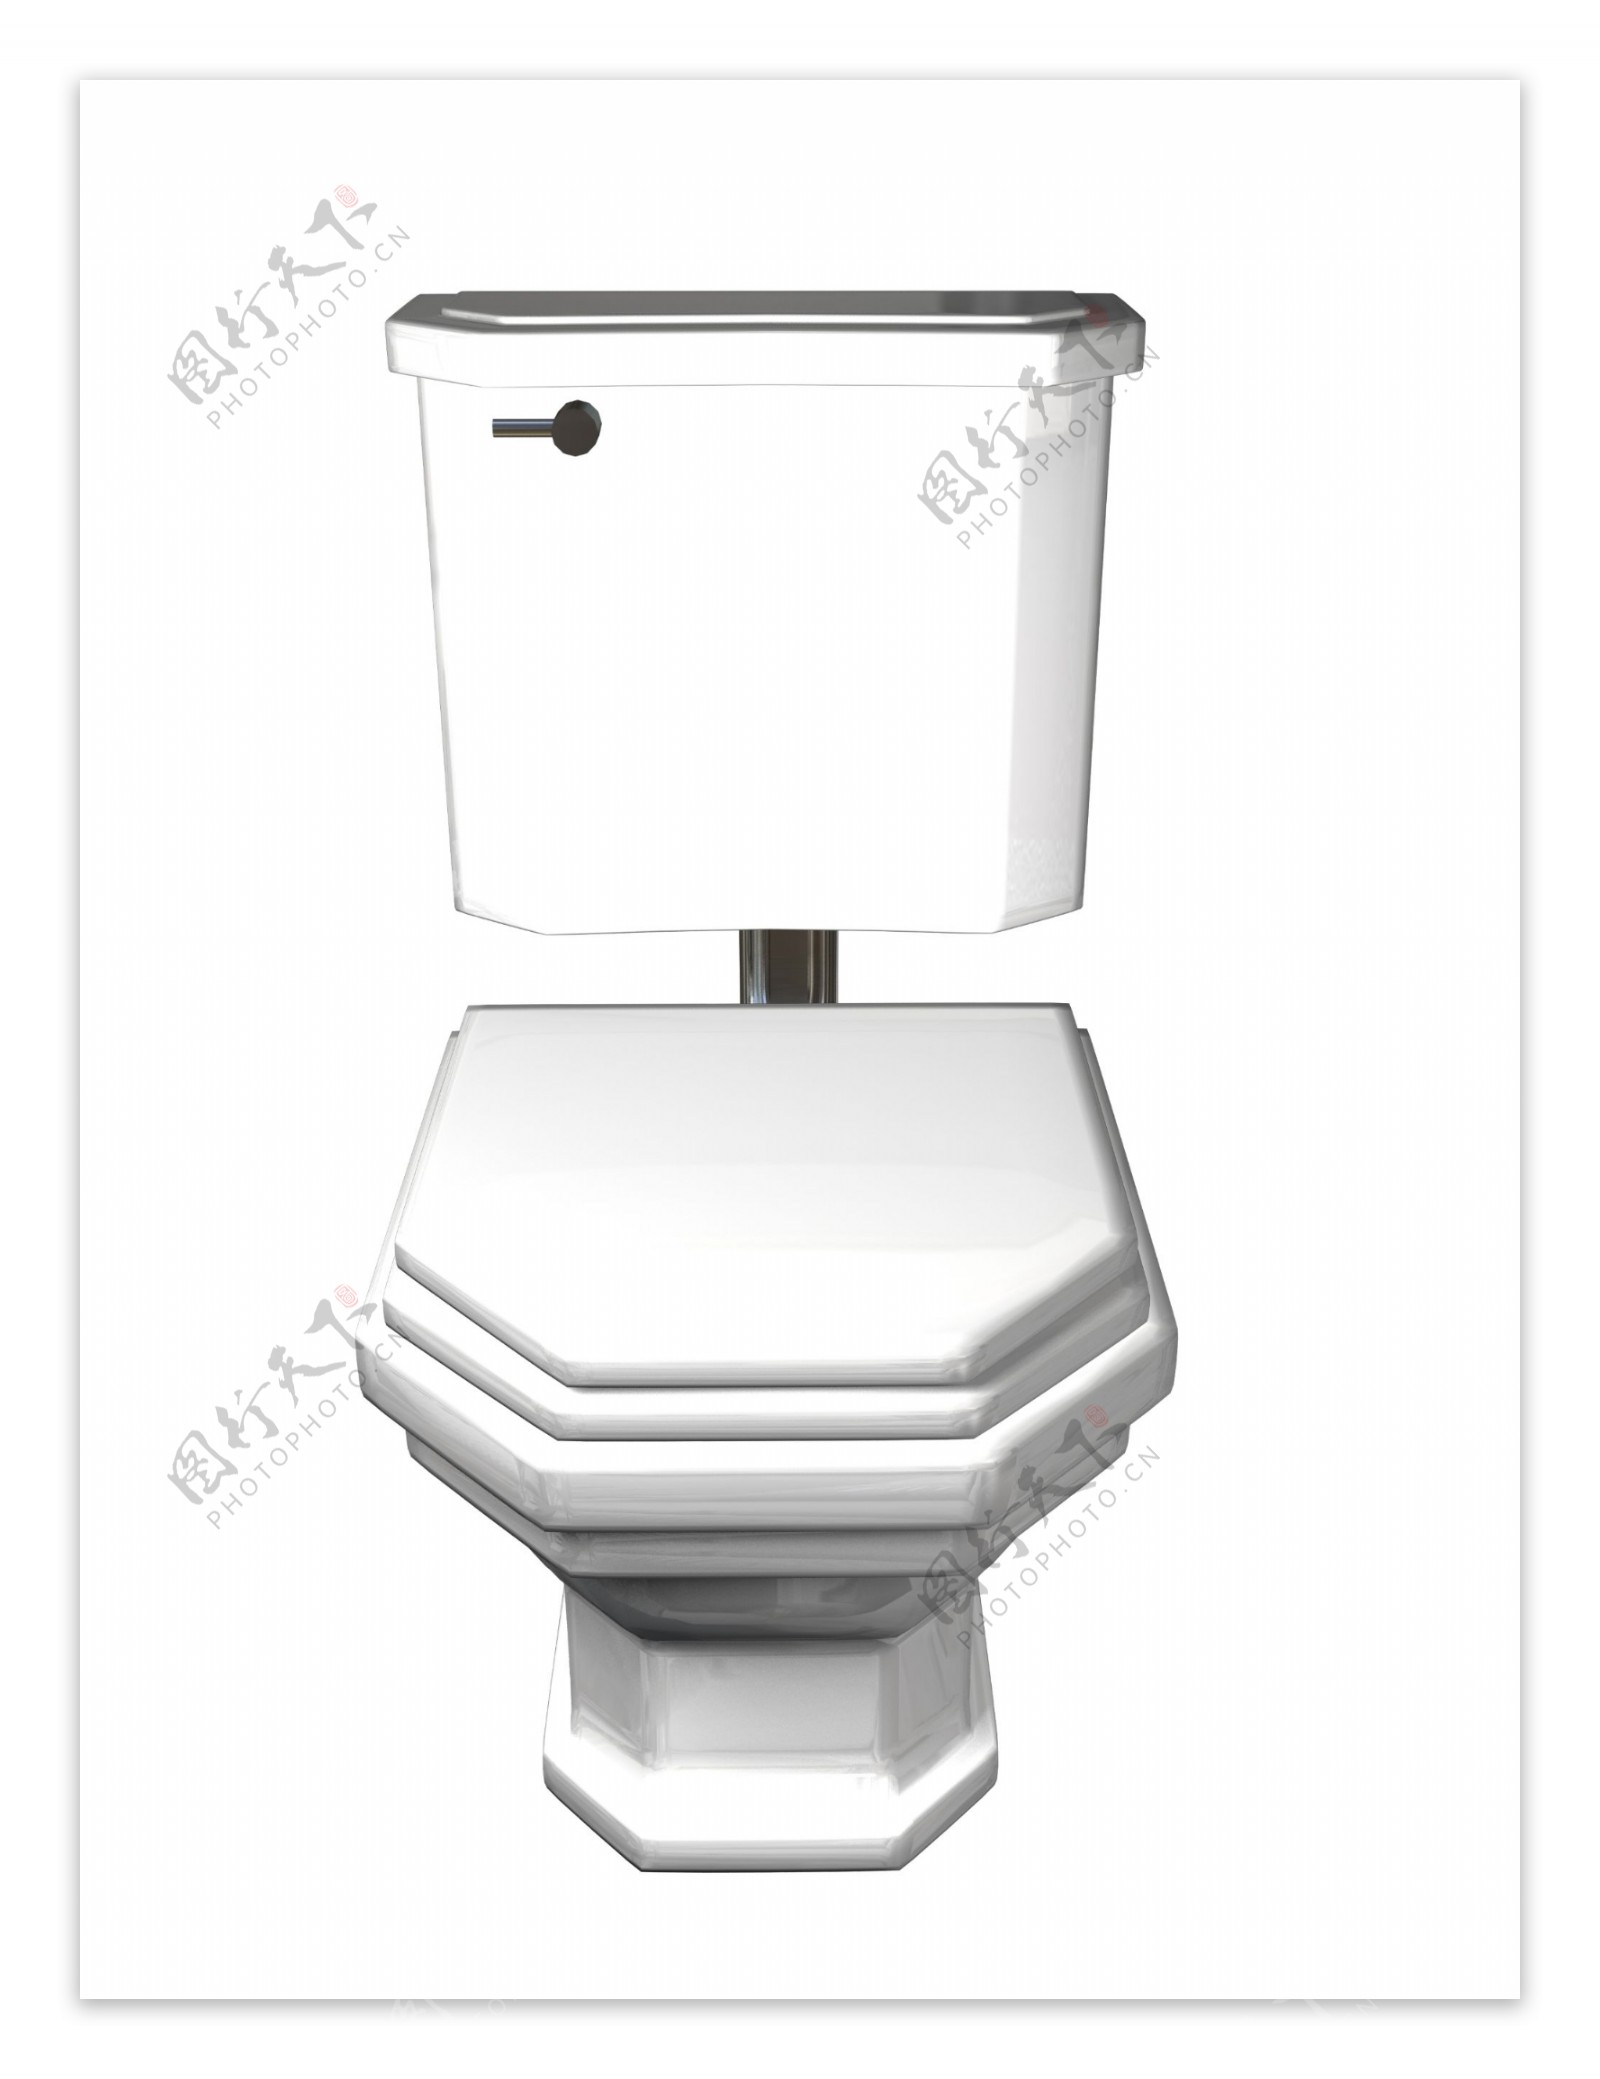 卫生间设施抽水马桶3